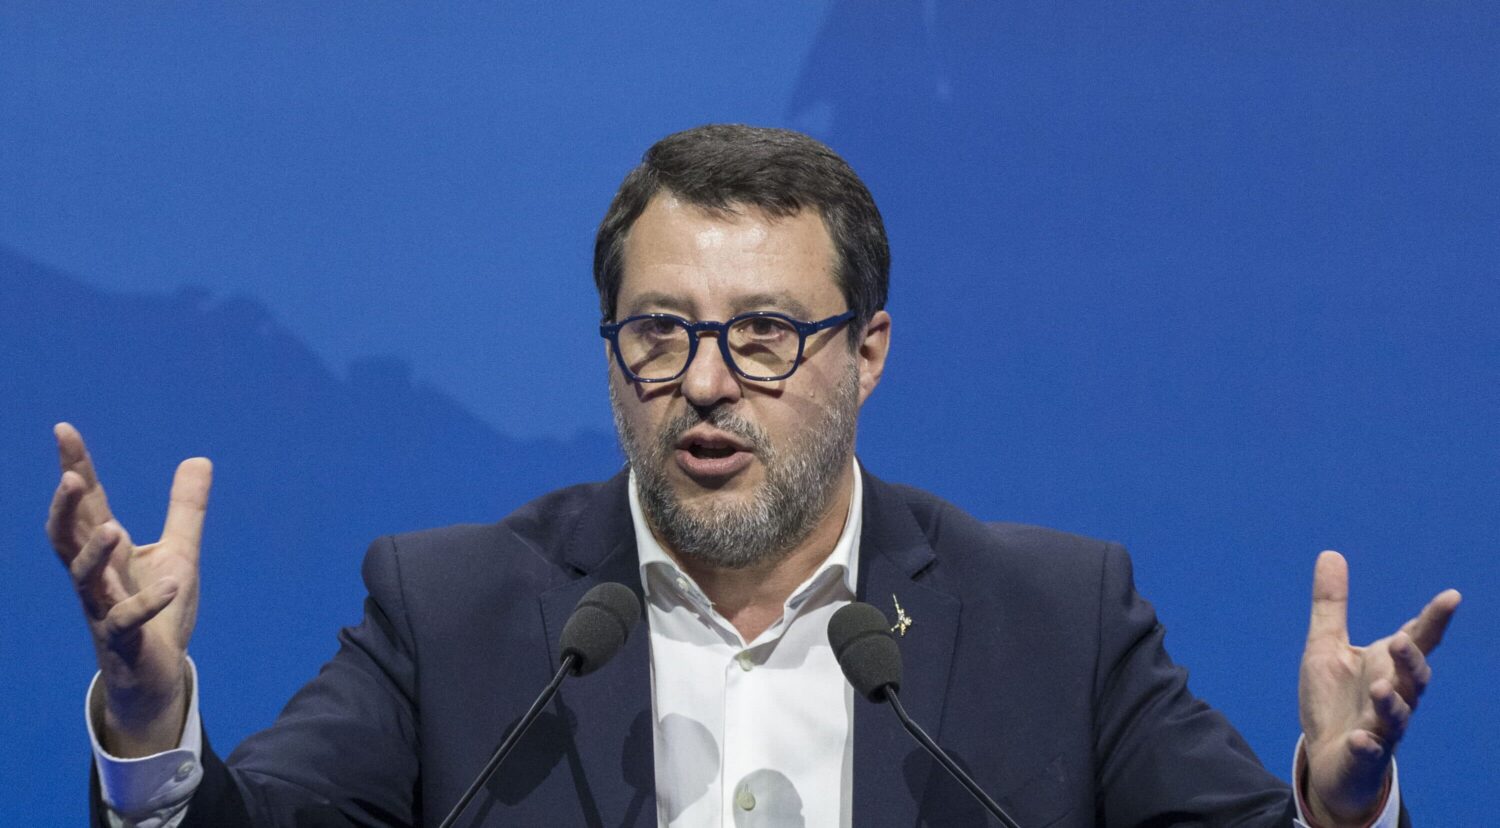 Salvini accelera sul Piano Salva casa, ma è un condono che vale milioni di voti